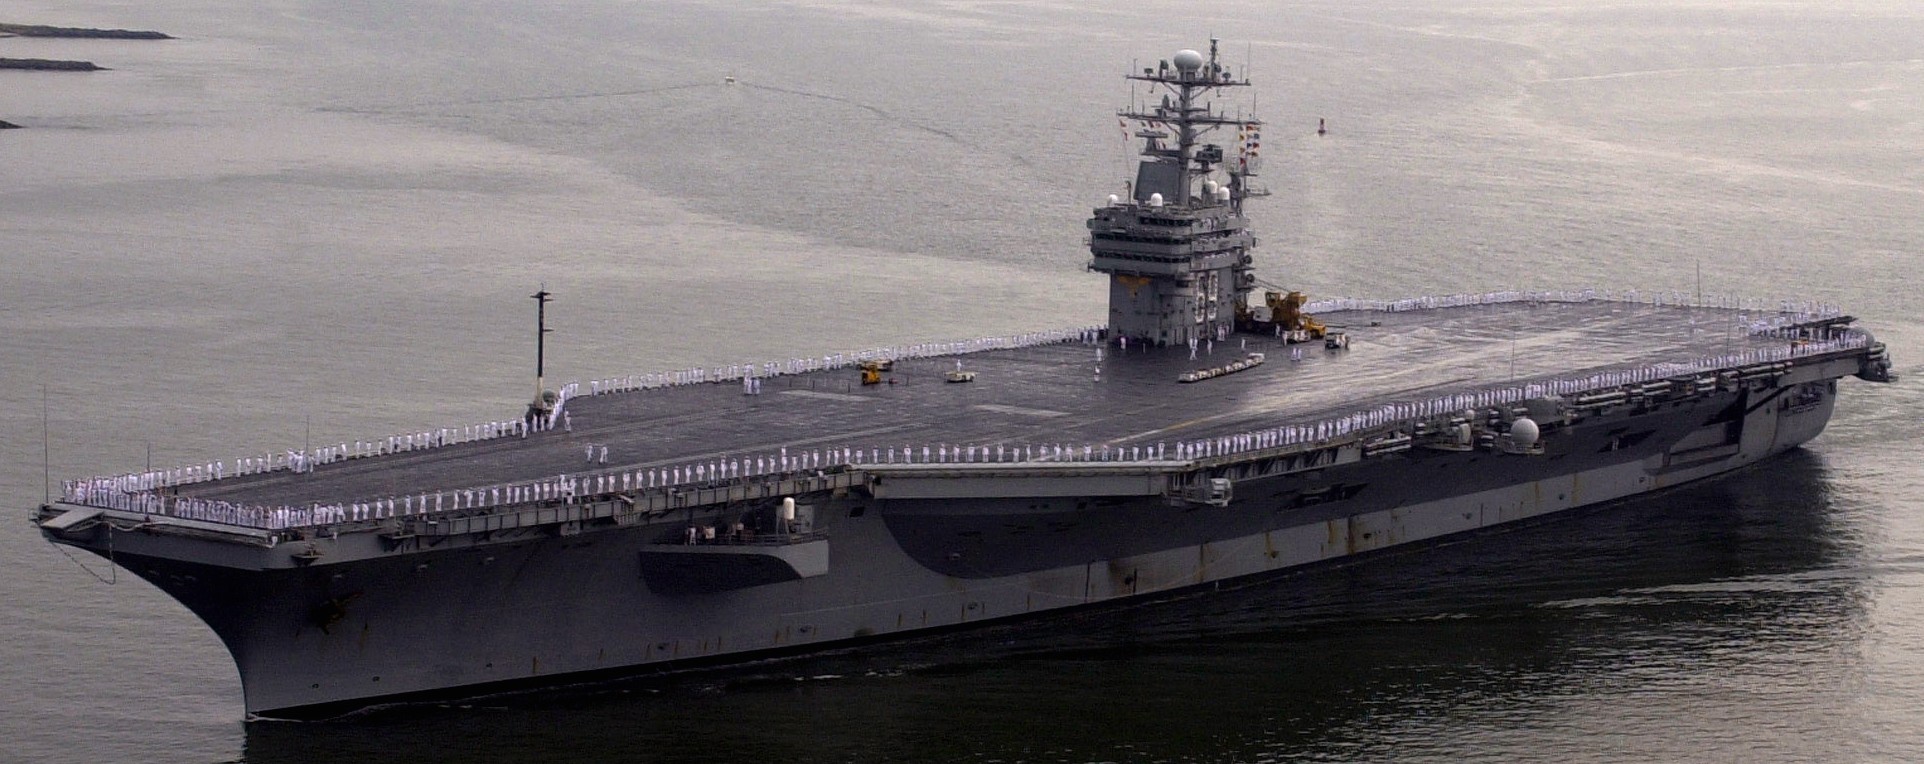 cvn-69 uss dwight d. eisenhower aircraft carrier us navy 224